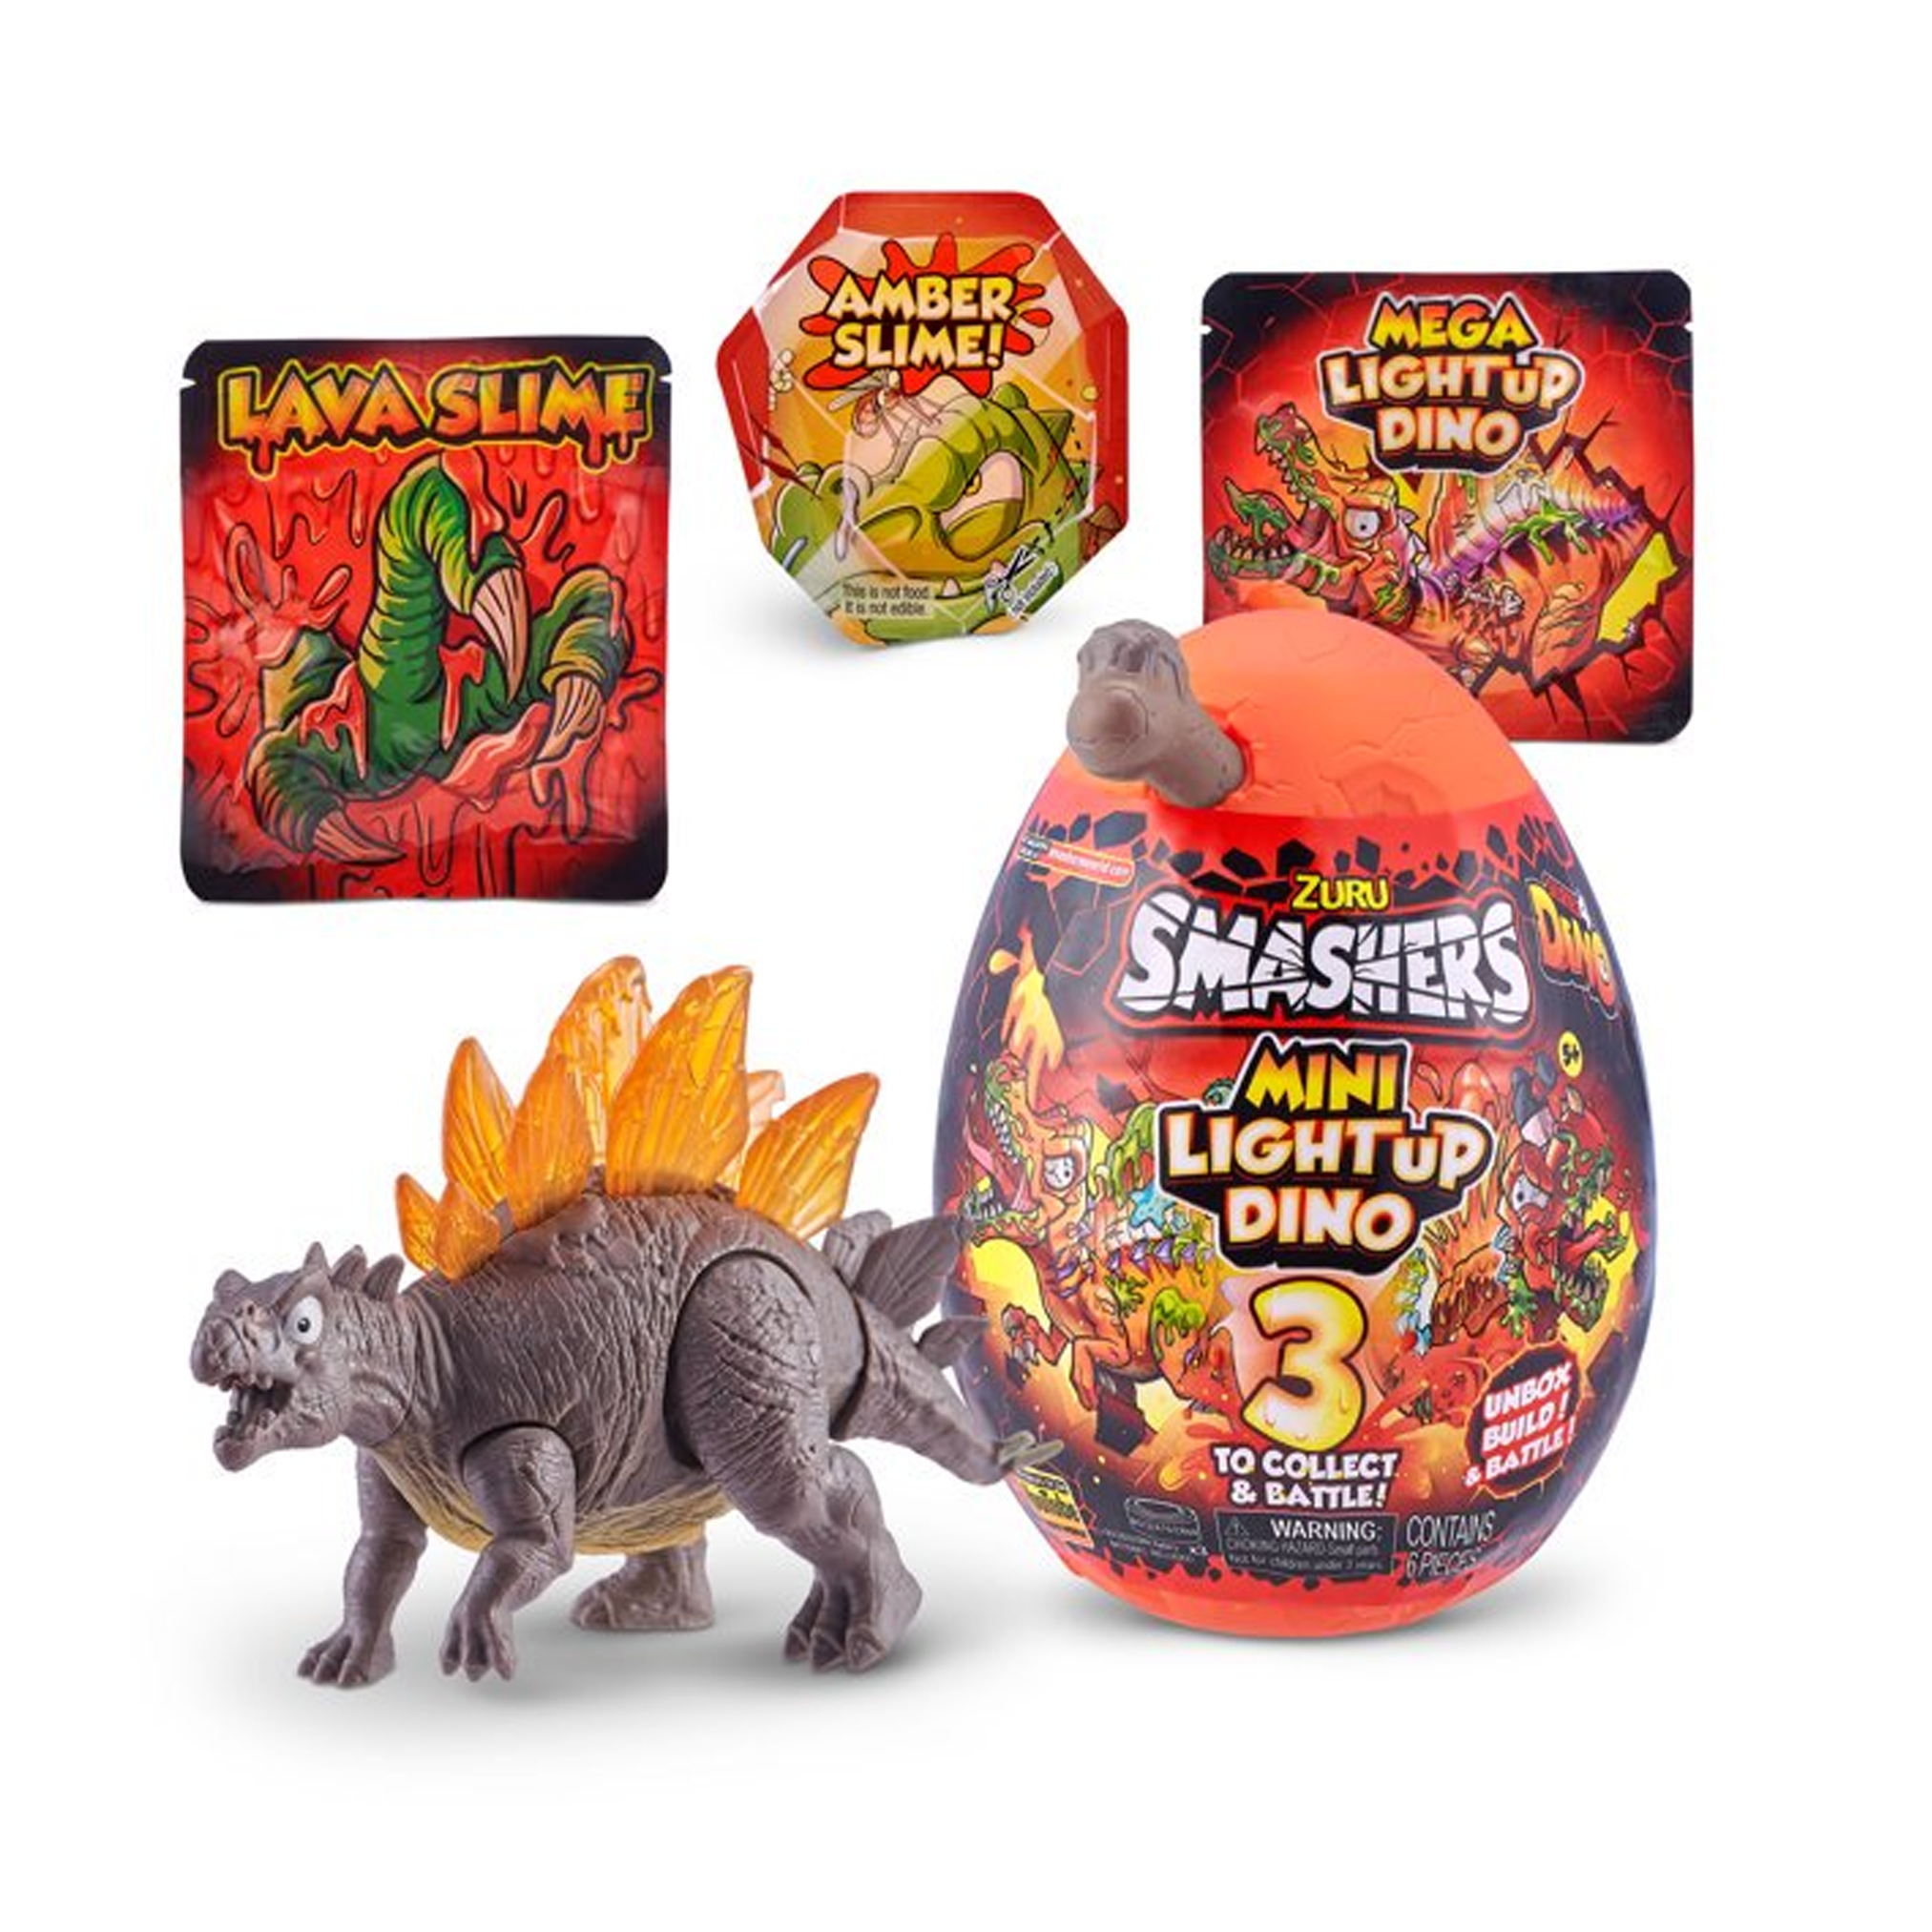 Smashers Mega Light Up Dino to SMASH - Squirrel Stampede